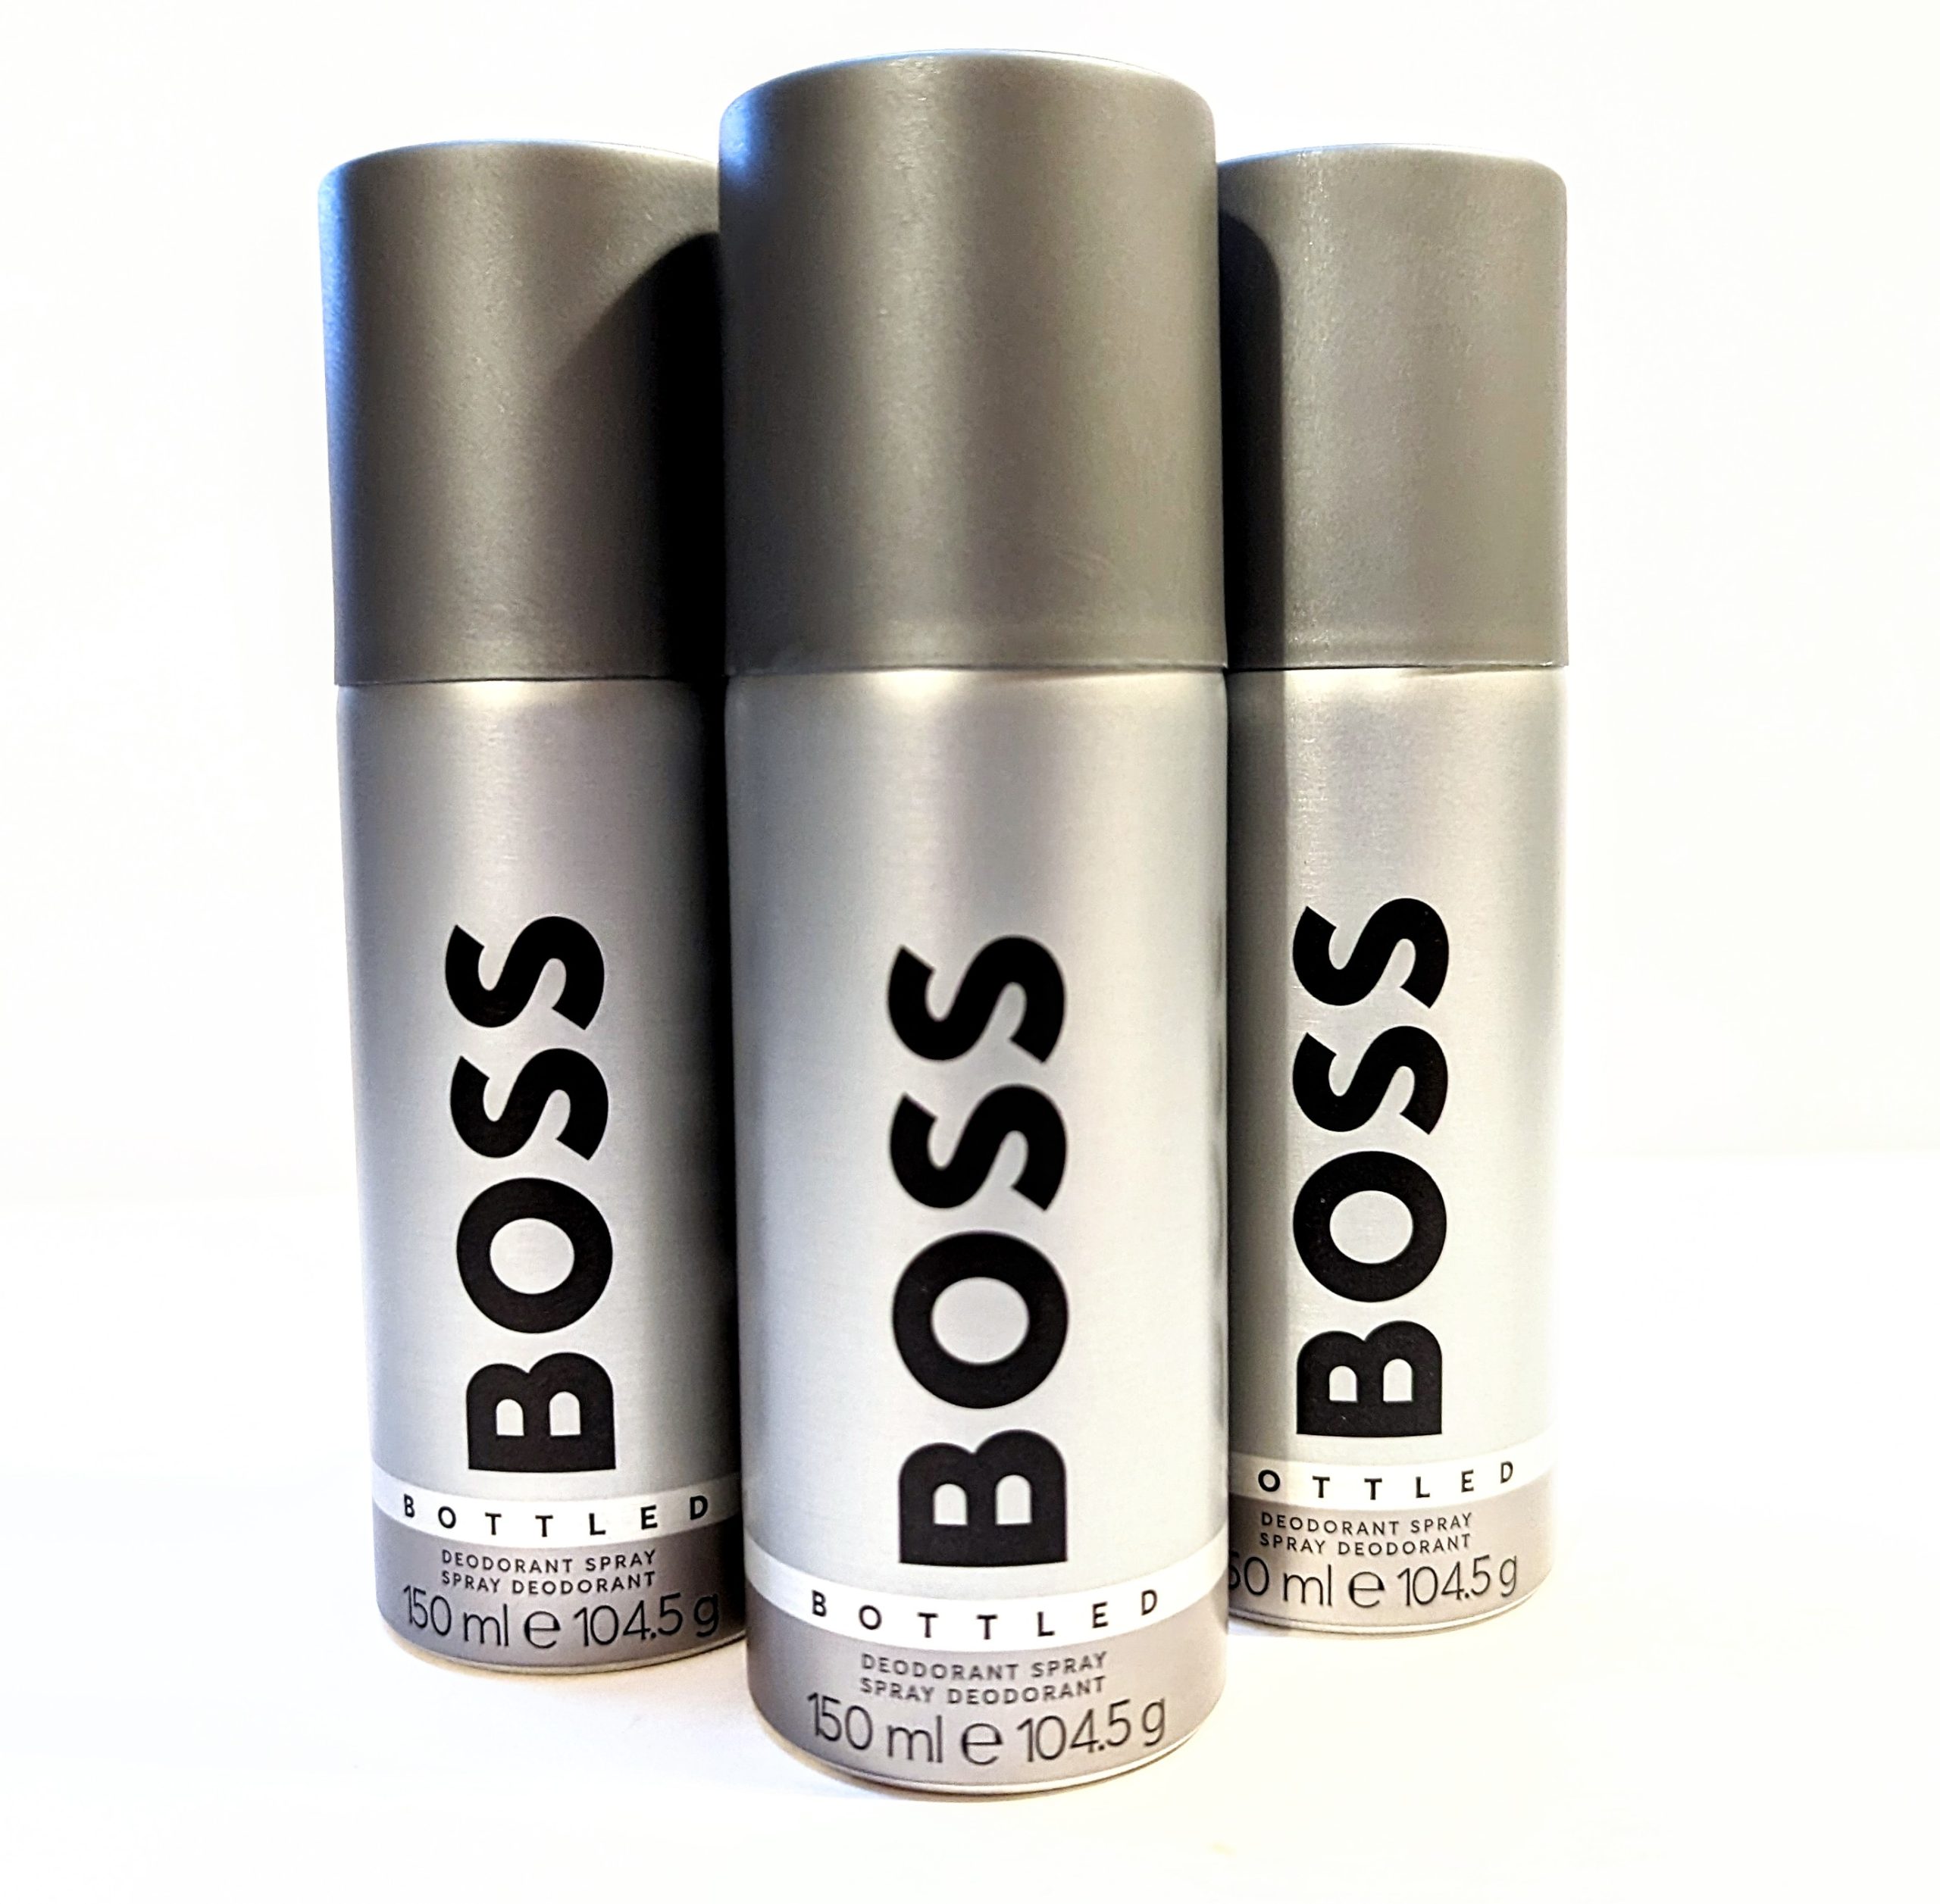 Three bottles of 3x Hugo Boss Bottled 150ml Deodorant Body Spray for Men on a white surface.